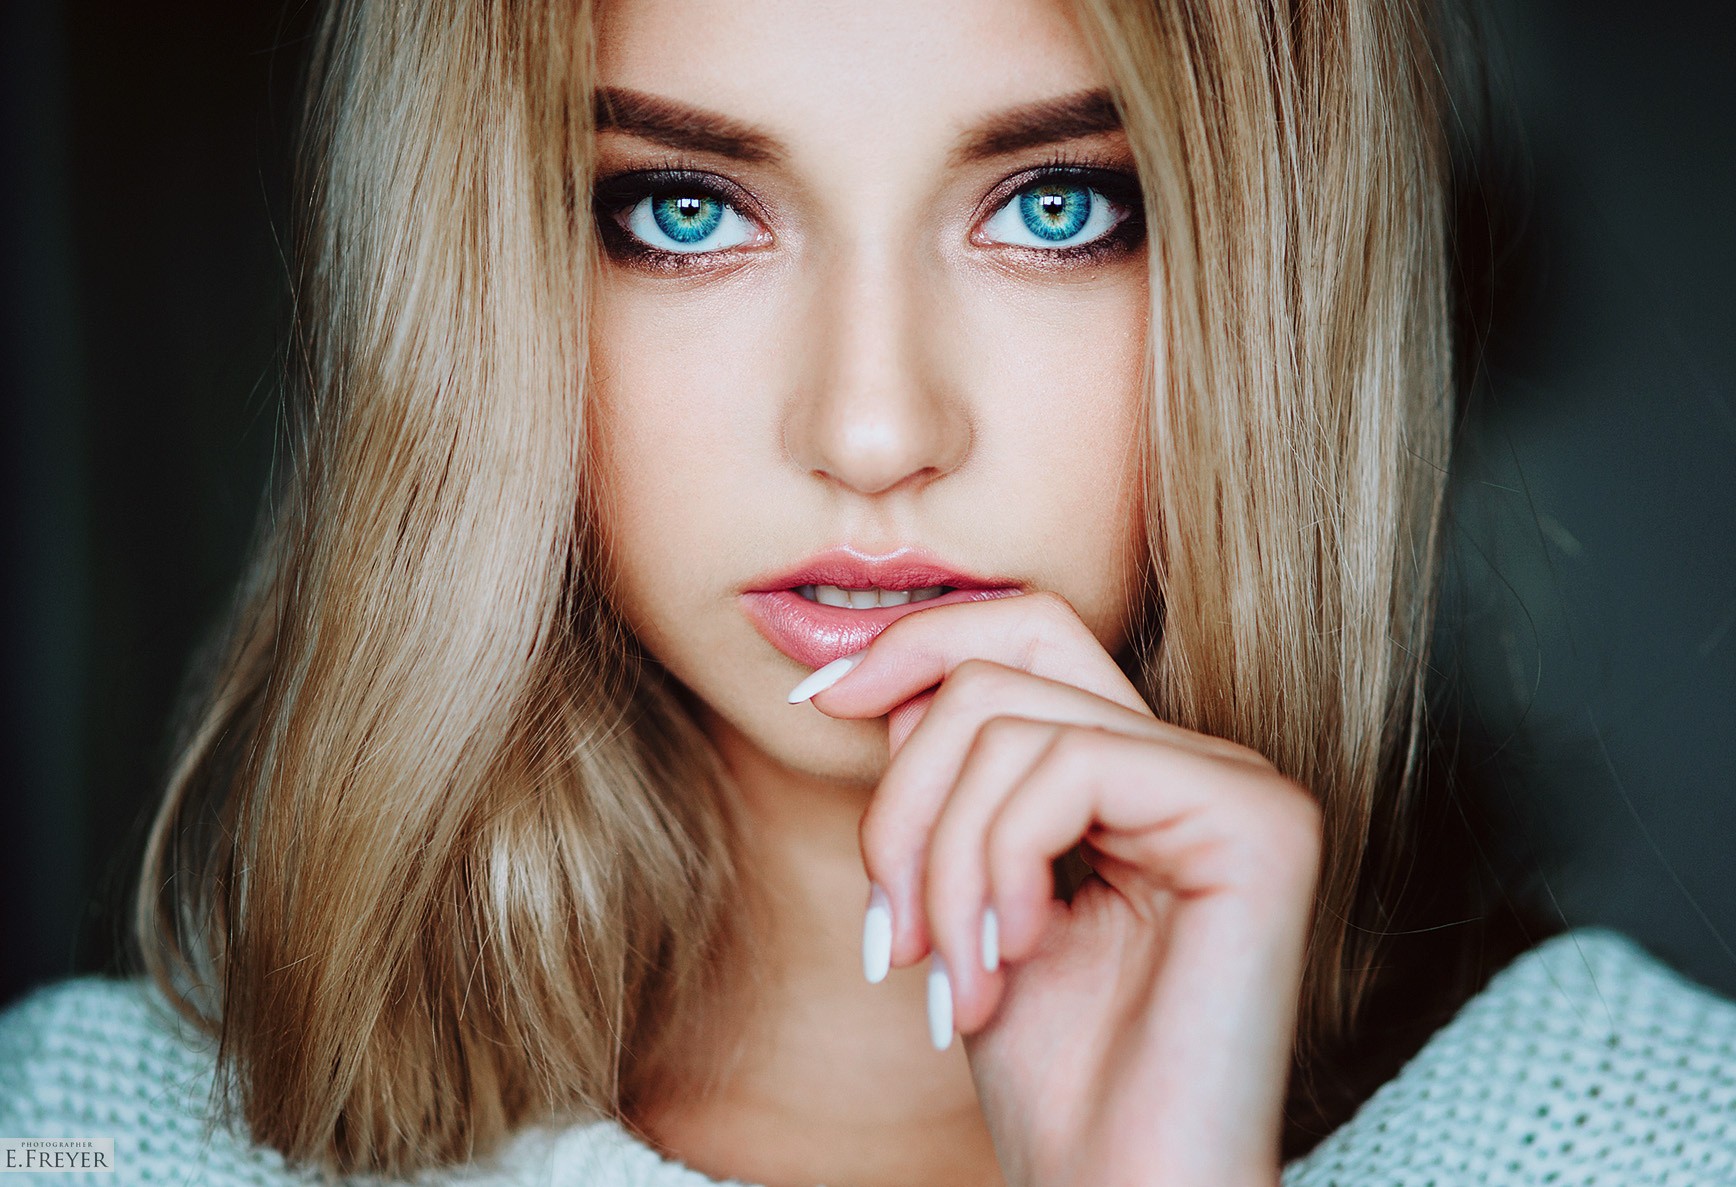 Women Blonde Face Blue Eyes Smoky Eyes Evgeny Freyer Polina Kostyuk Looking At Viewer